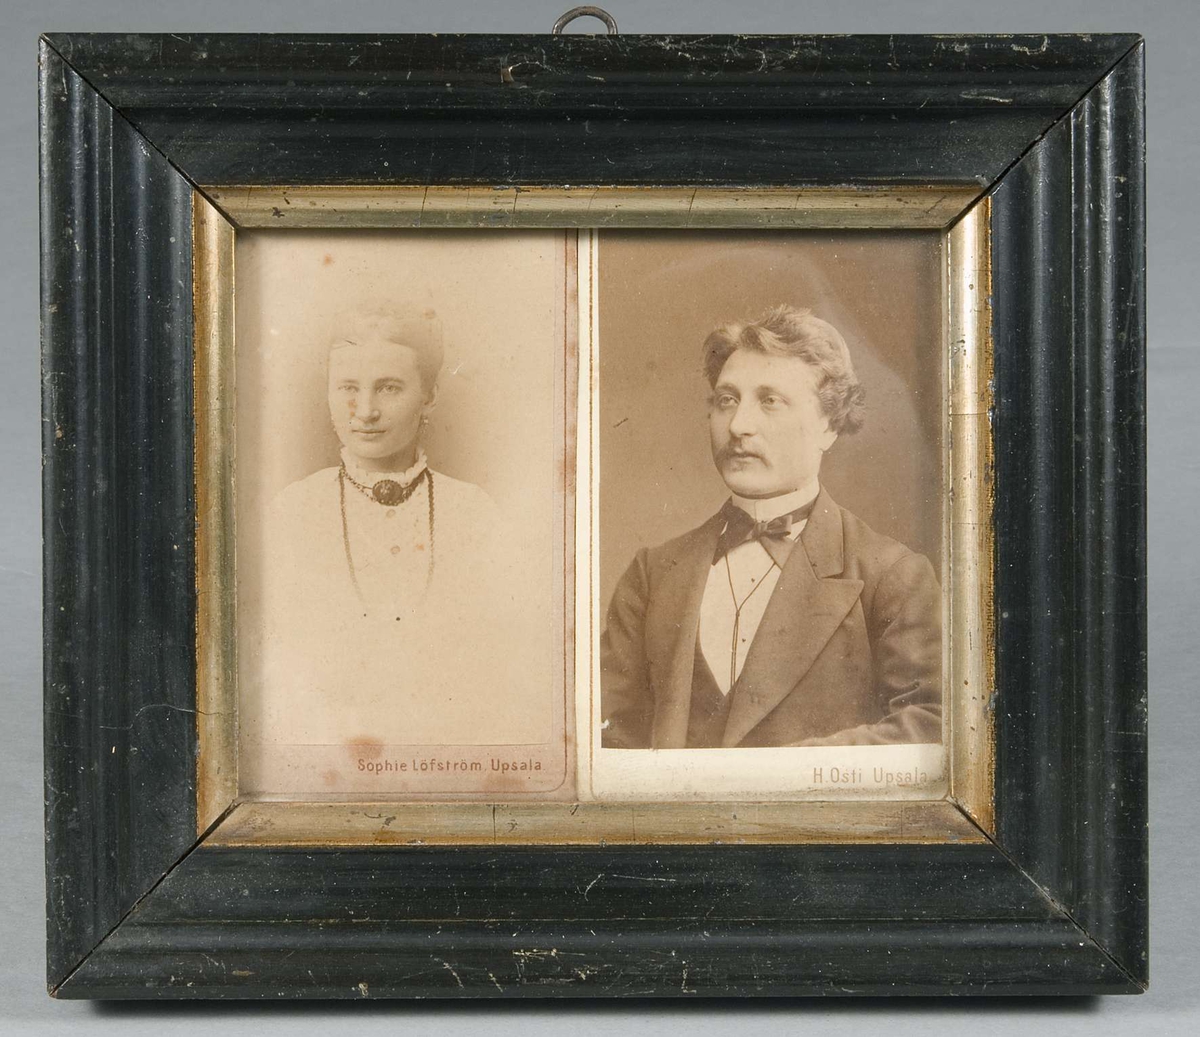 Två kabinettsfotografier i samma ram. Det vänstra är ett porträtt av en kvinna, det högra är ett porträtt av en man.